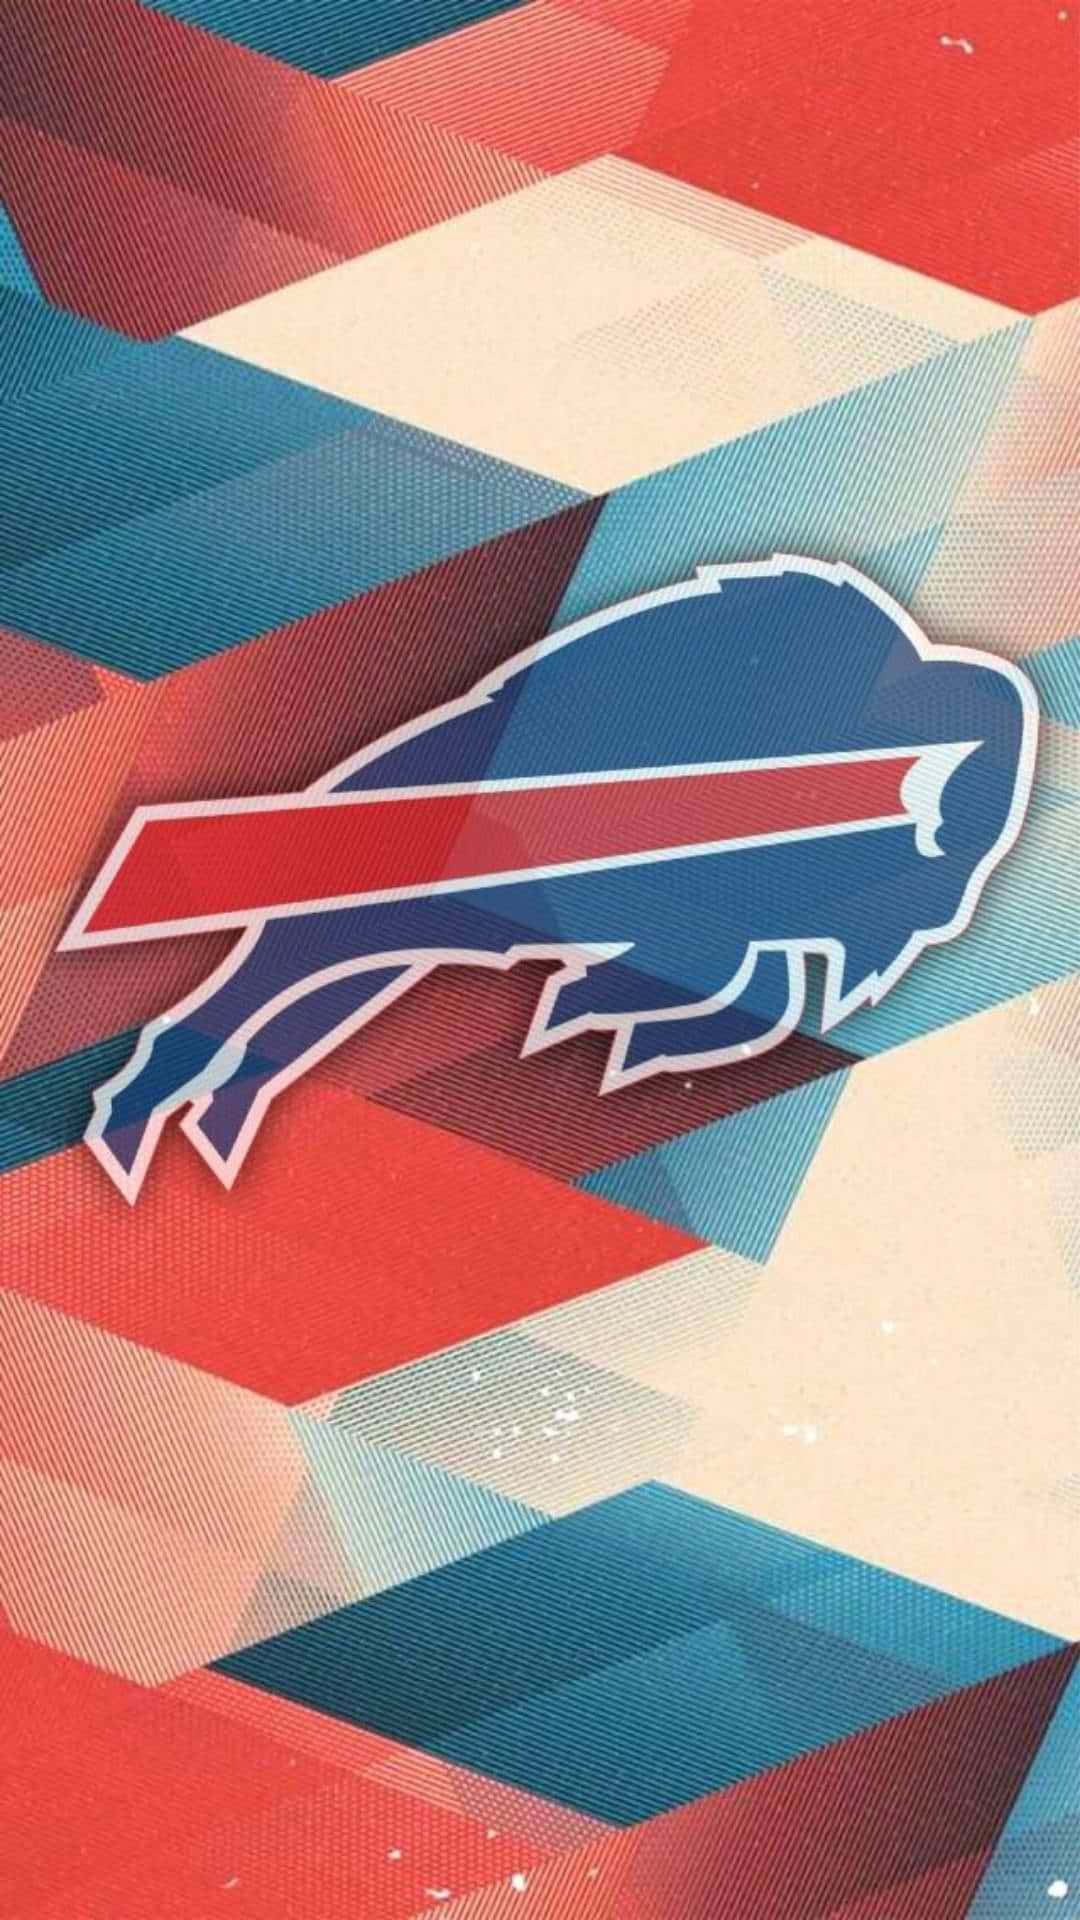 Elhistórico Logo Y Colores De Los Buffalo Bills.